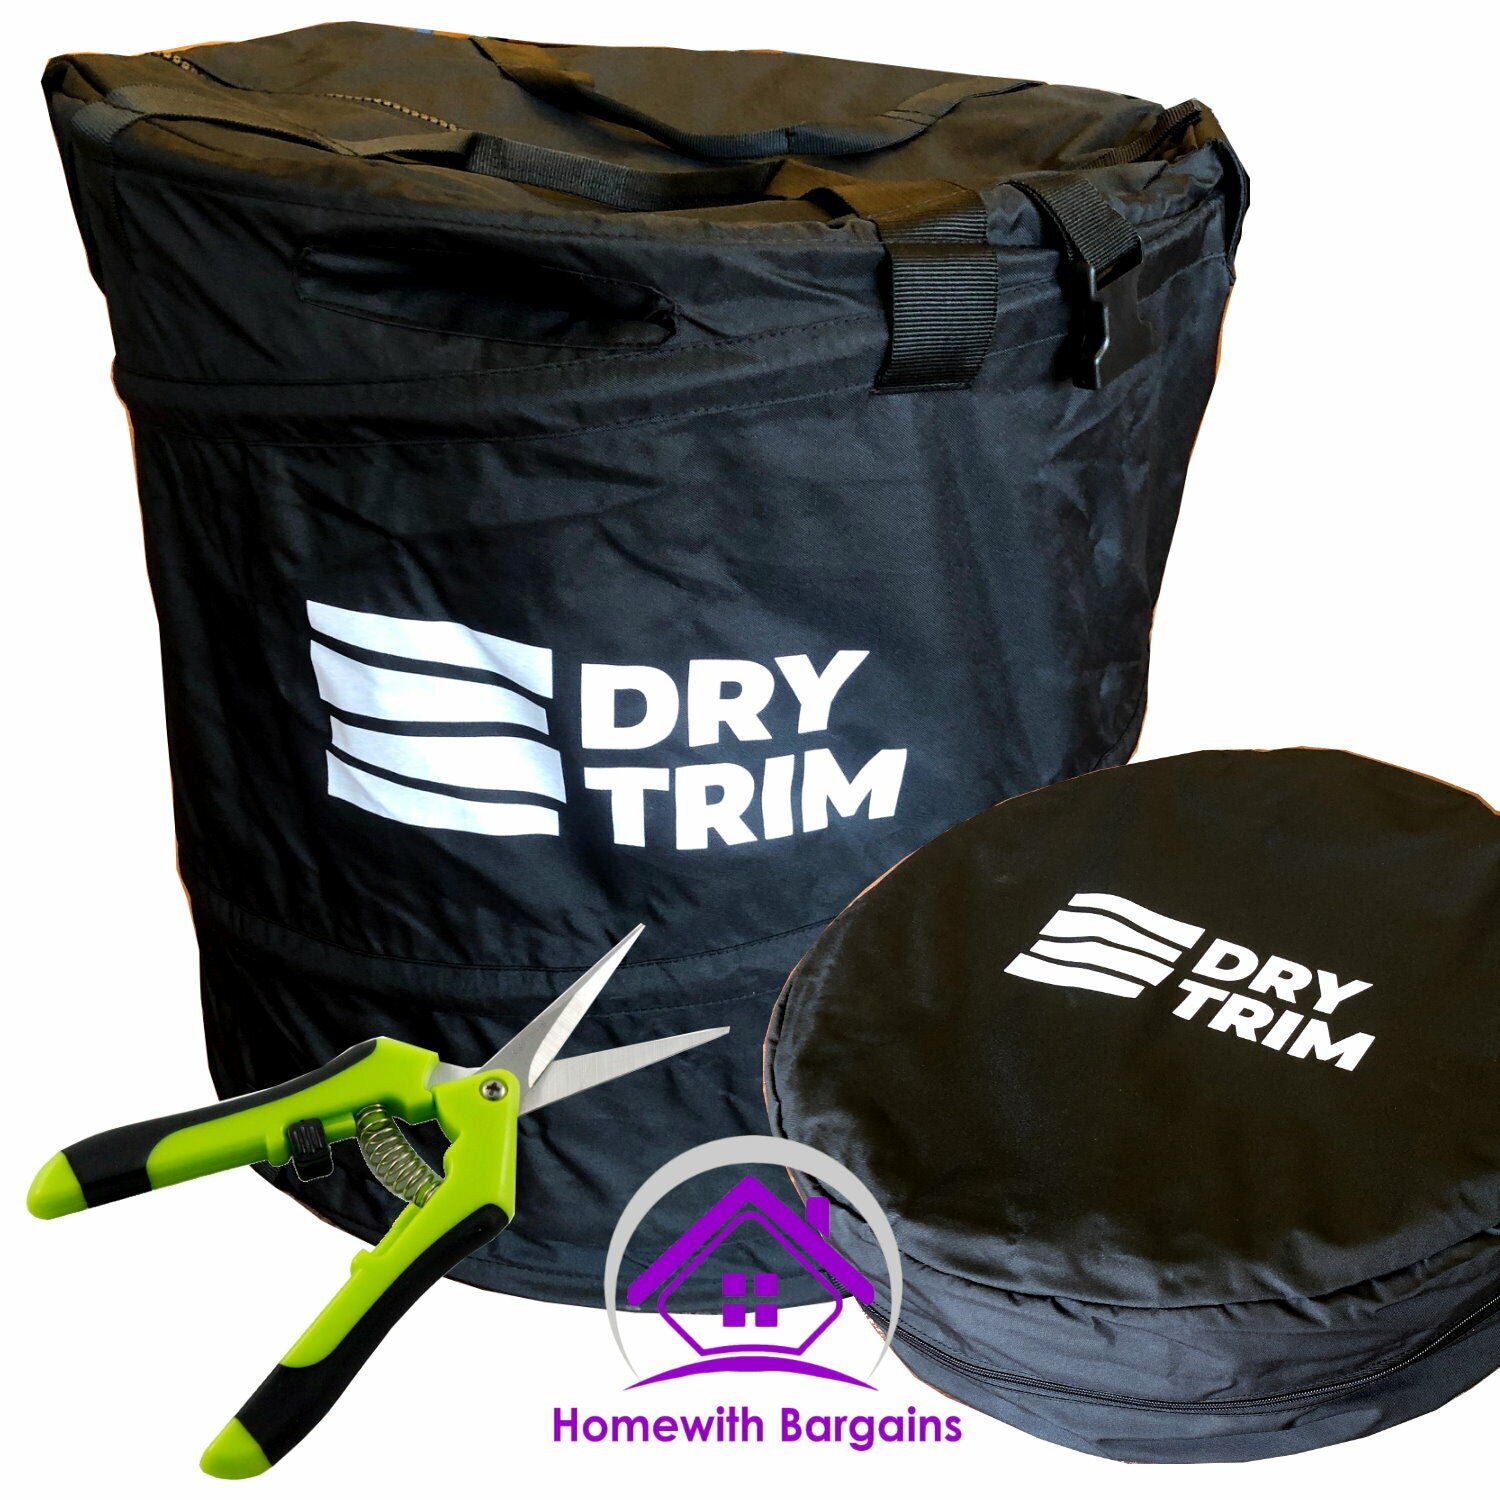 DRY TRIM Bud Leaf Trimmer Dry Pruner Spin Quick Harvesting Bag Hydroponics